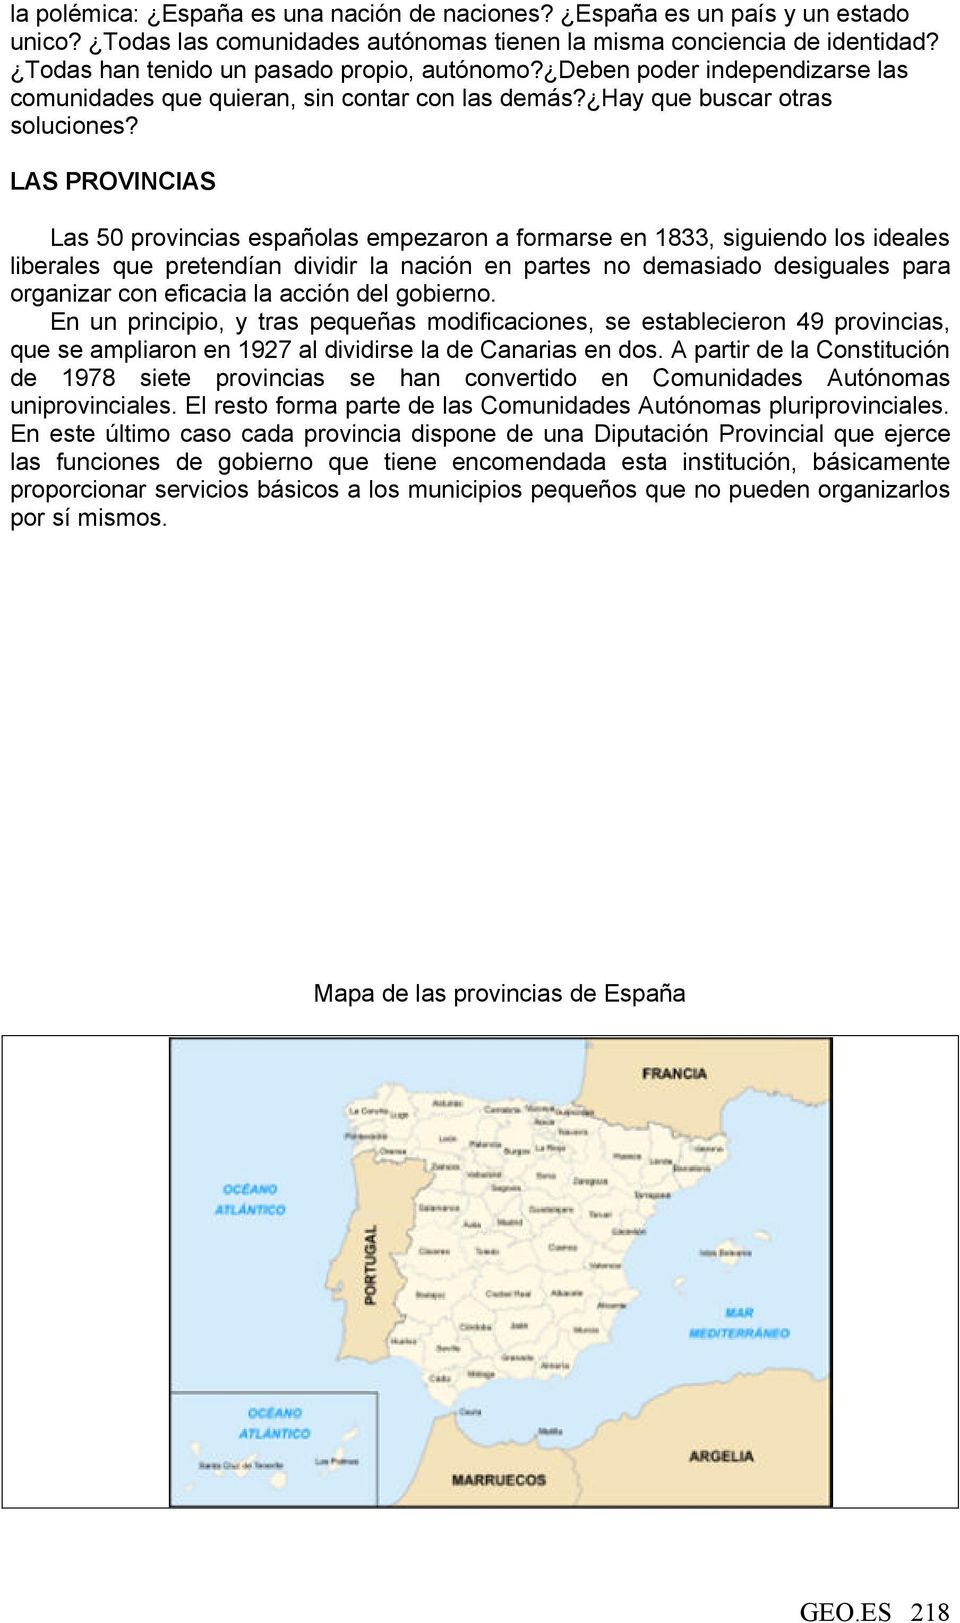 LAS PROVINCIAS Las 50 provincias españolas empezaron a formarse en 1833, siguiendo los ideales liberales que pretendían dividir la nación en partes no demasiado desiguales para organizar con eficacia